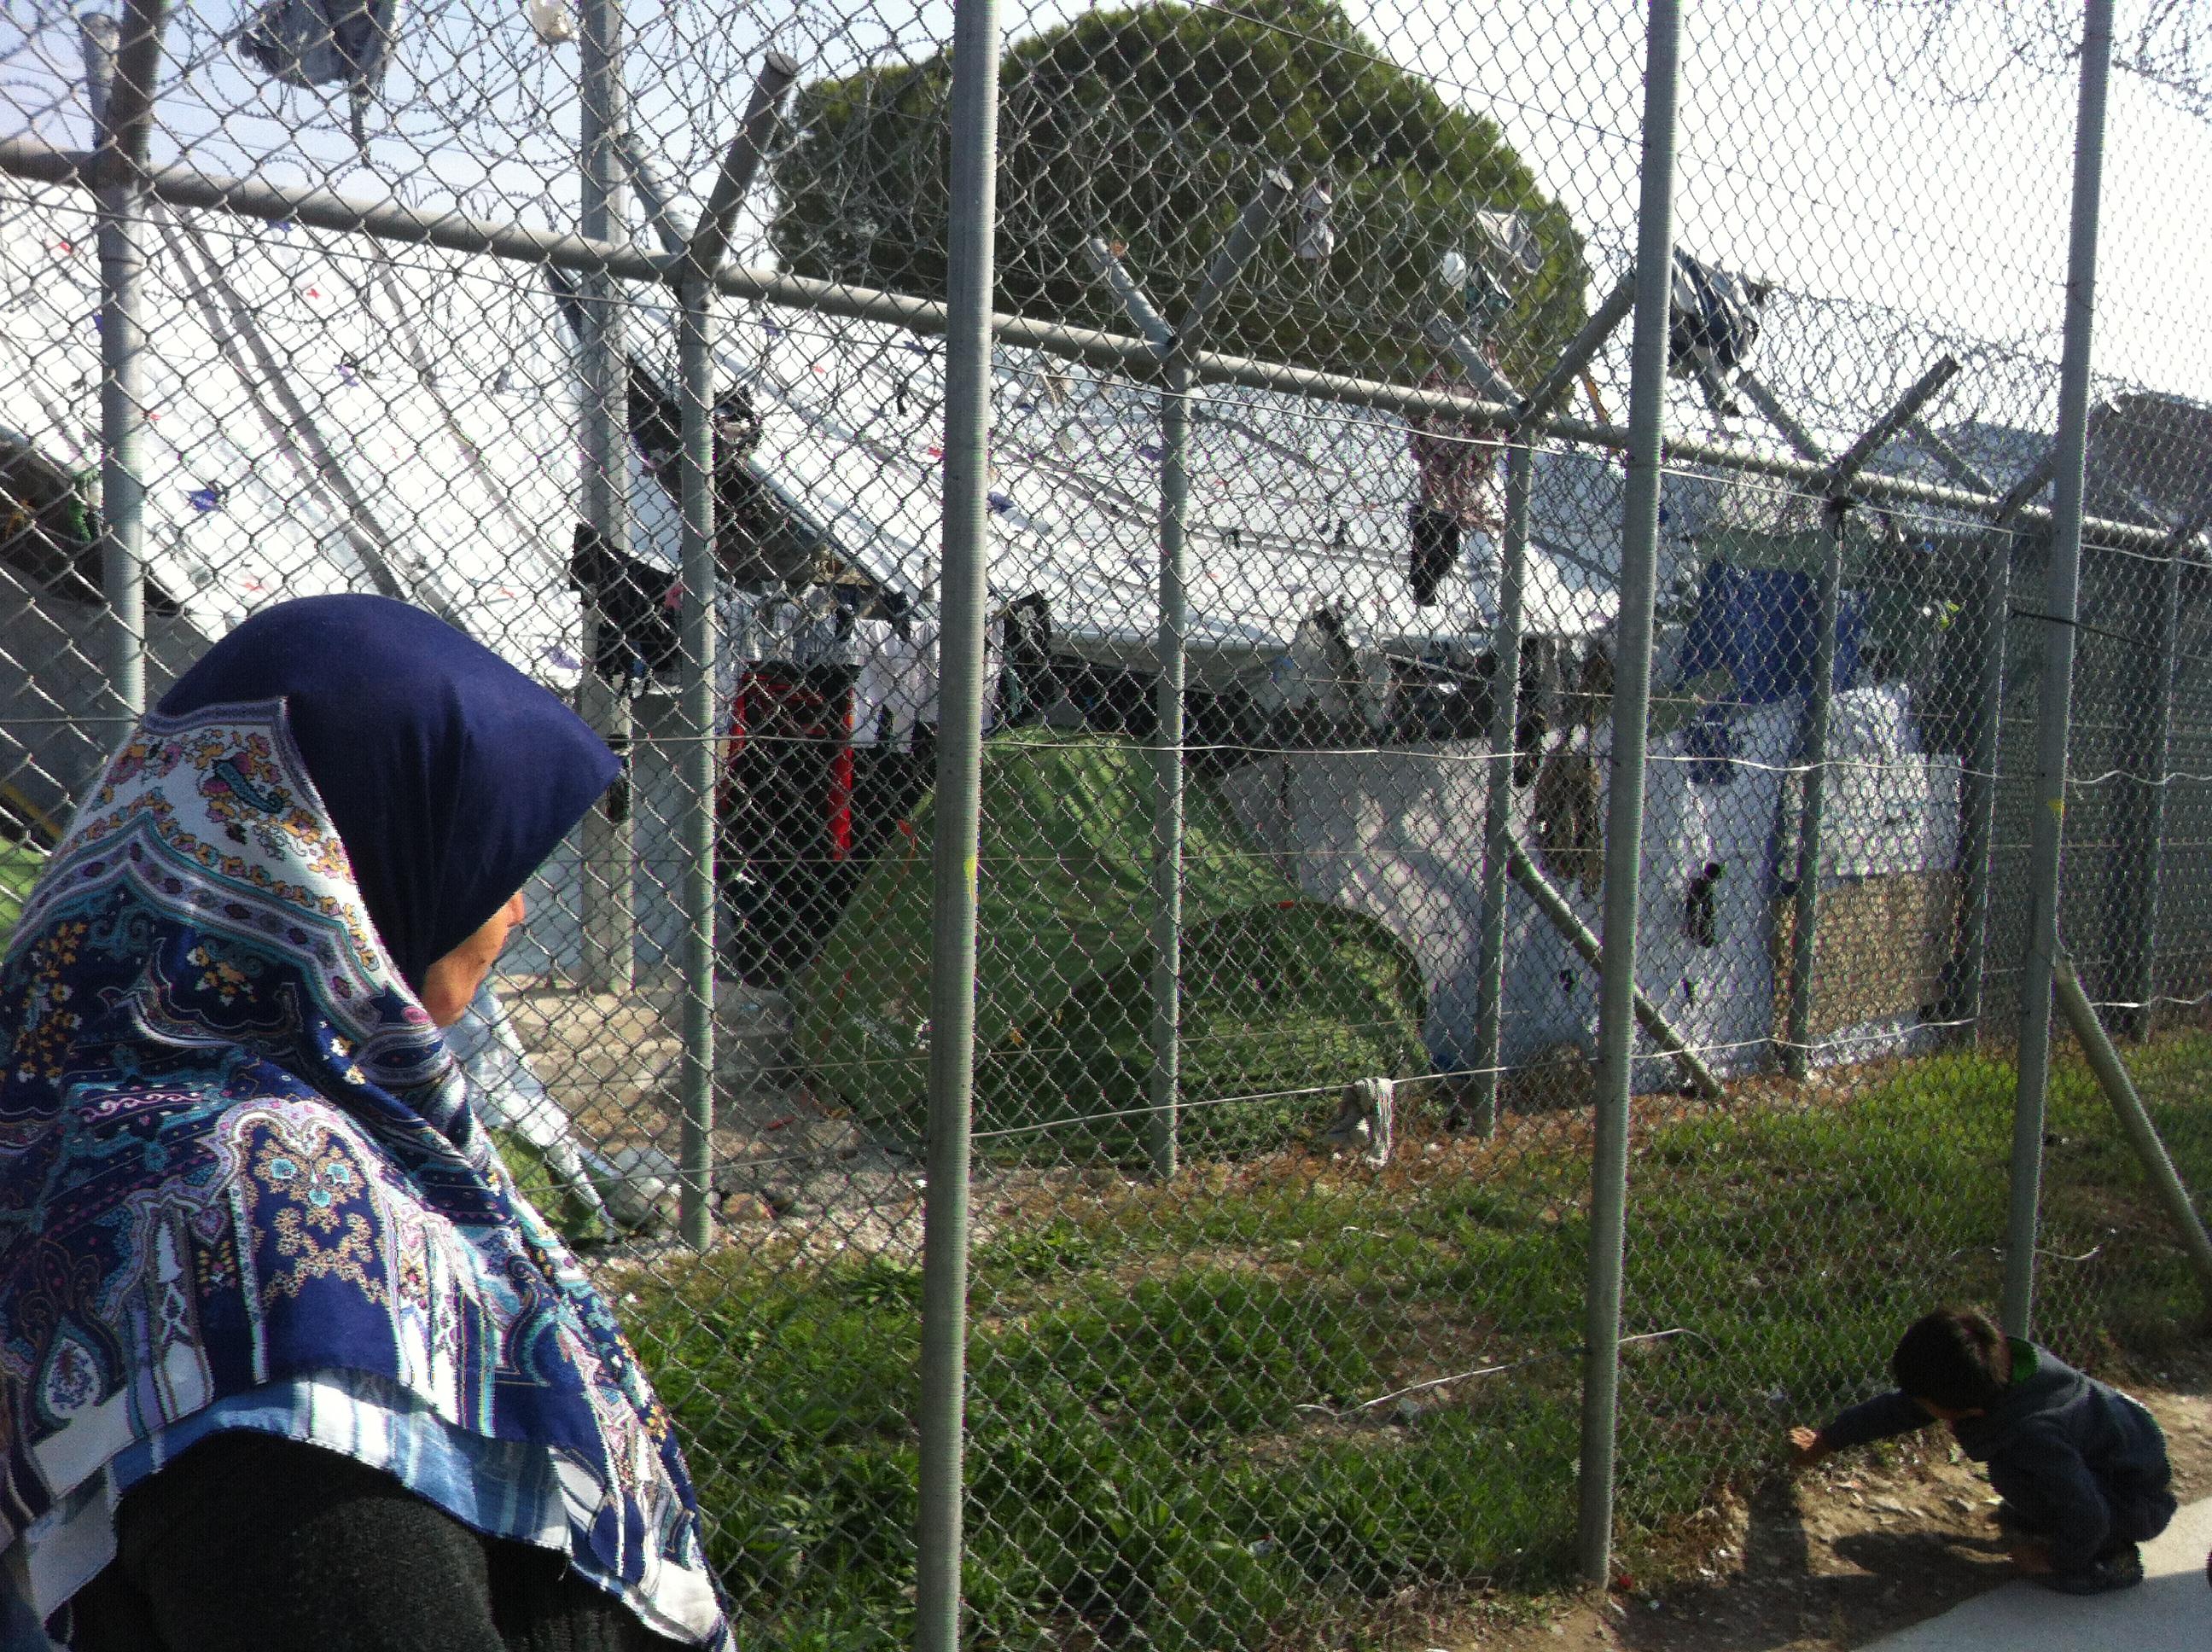 Des migrants vivent à l'intérieur comme à l'extérieur des enceintes du camp de Moria, sur l'île grecque de Lesbos. [RTS - Angélique Kourounis]